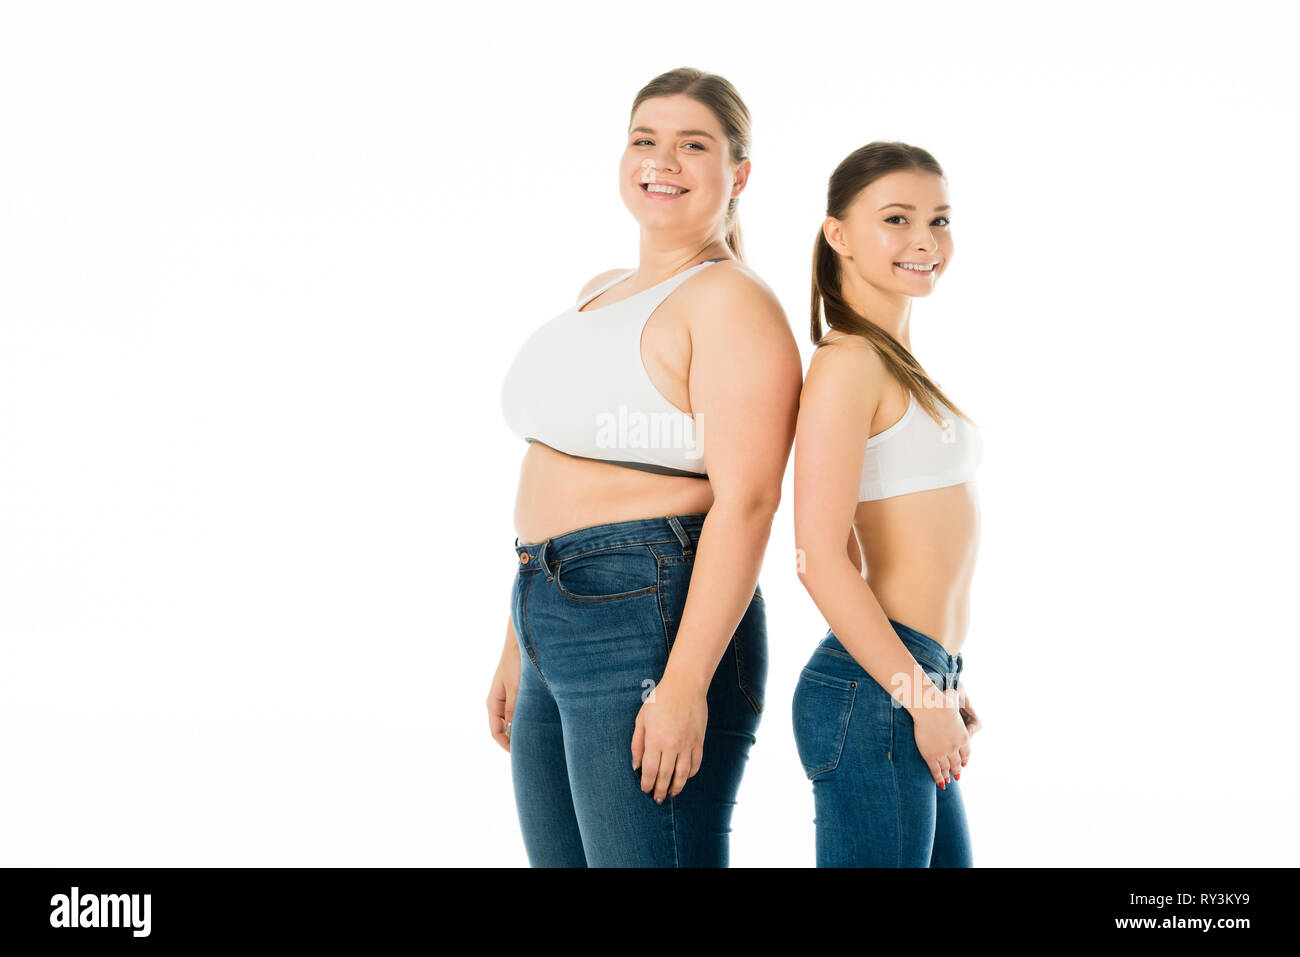 Lächelnd schlank und übergewichtige Frauen in Jeans zusammen auf Weiß, Körper Positivität Konzept isoliert Posing Stockfoto